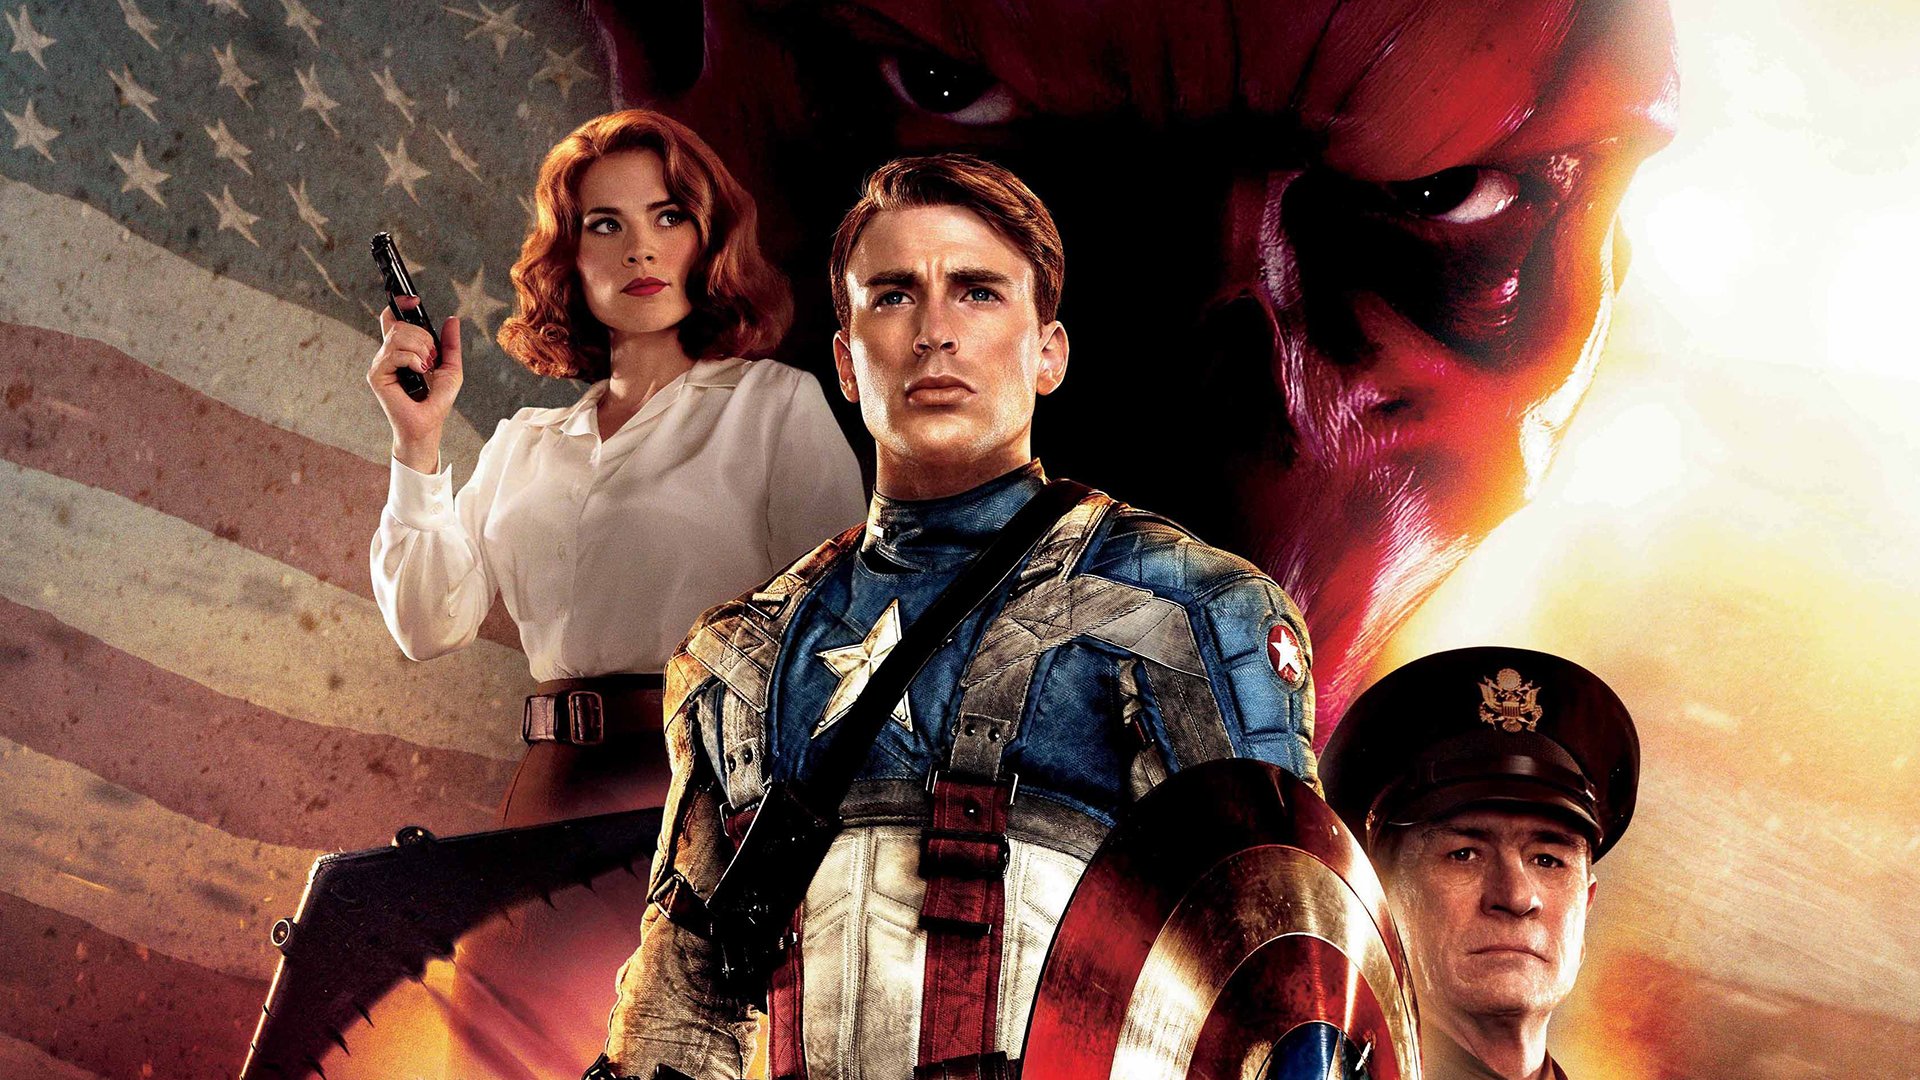 Image Captain America: The First Avenger Chris Evans 1920x1080